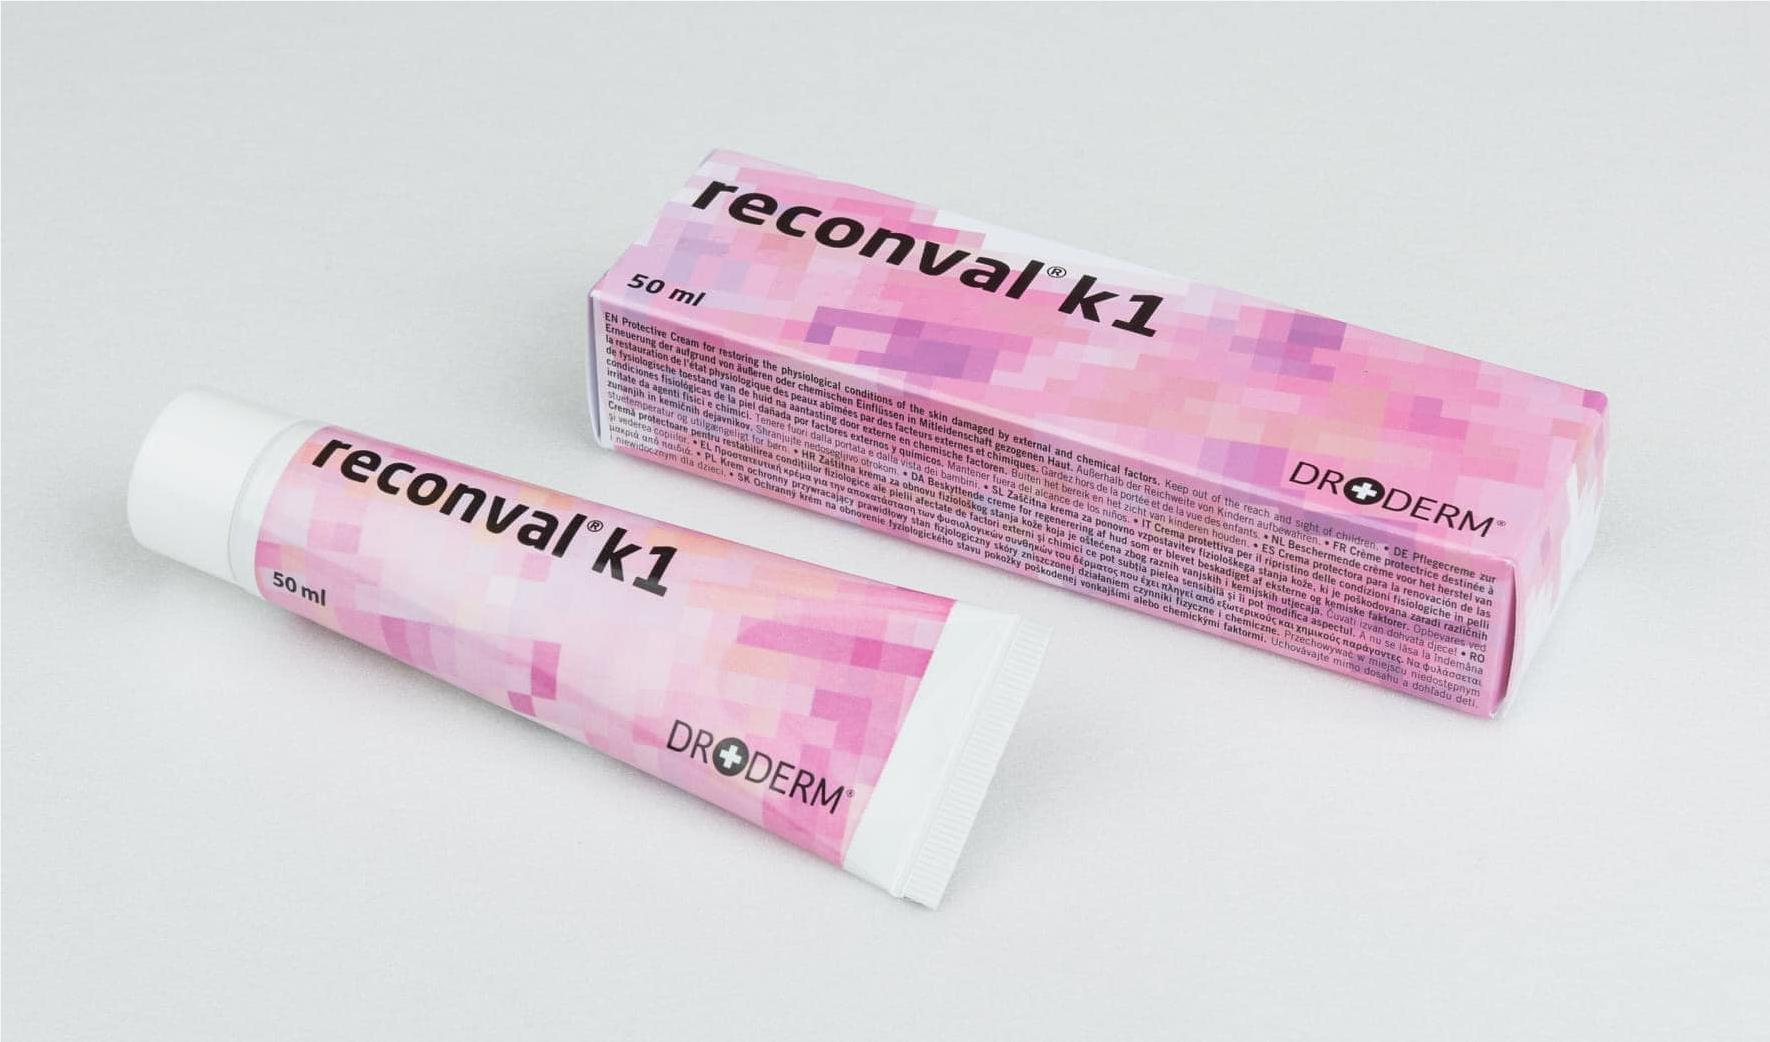 Thuốc Reconval K1 dạng bôi 50ml giá bao nhiêu mua ở đâu?